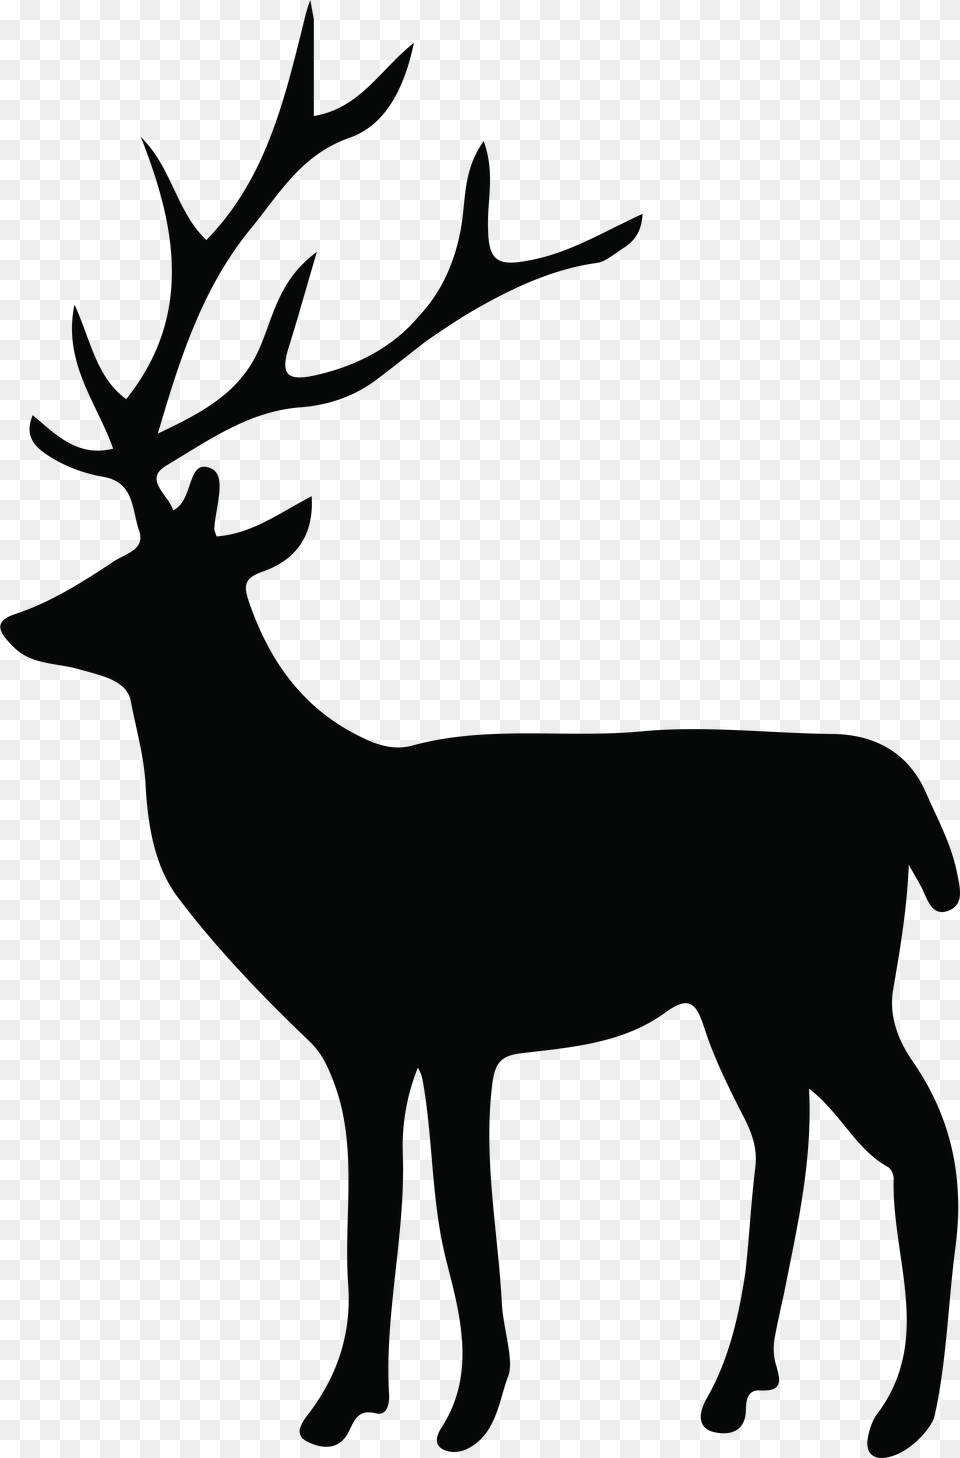 Deer Silhouette Clip Art Image Deer Silhouette, Animal, Elk, Mammal, Wildlife Png